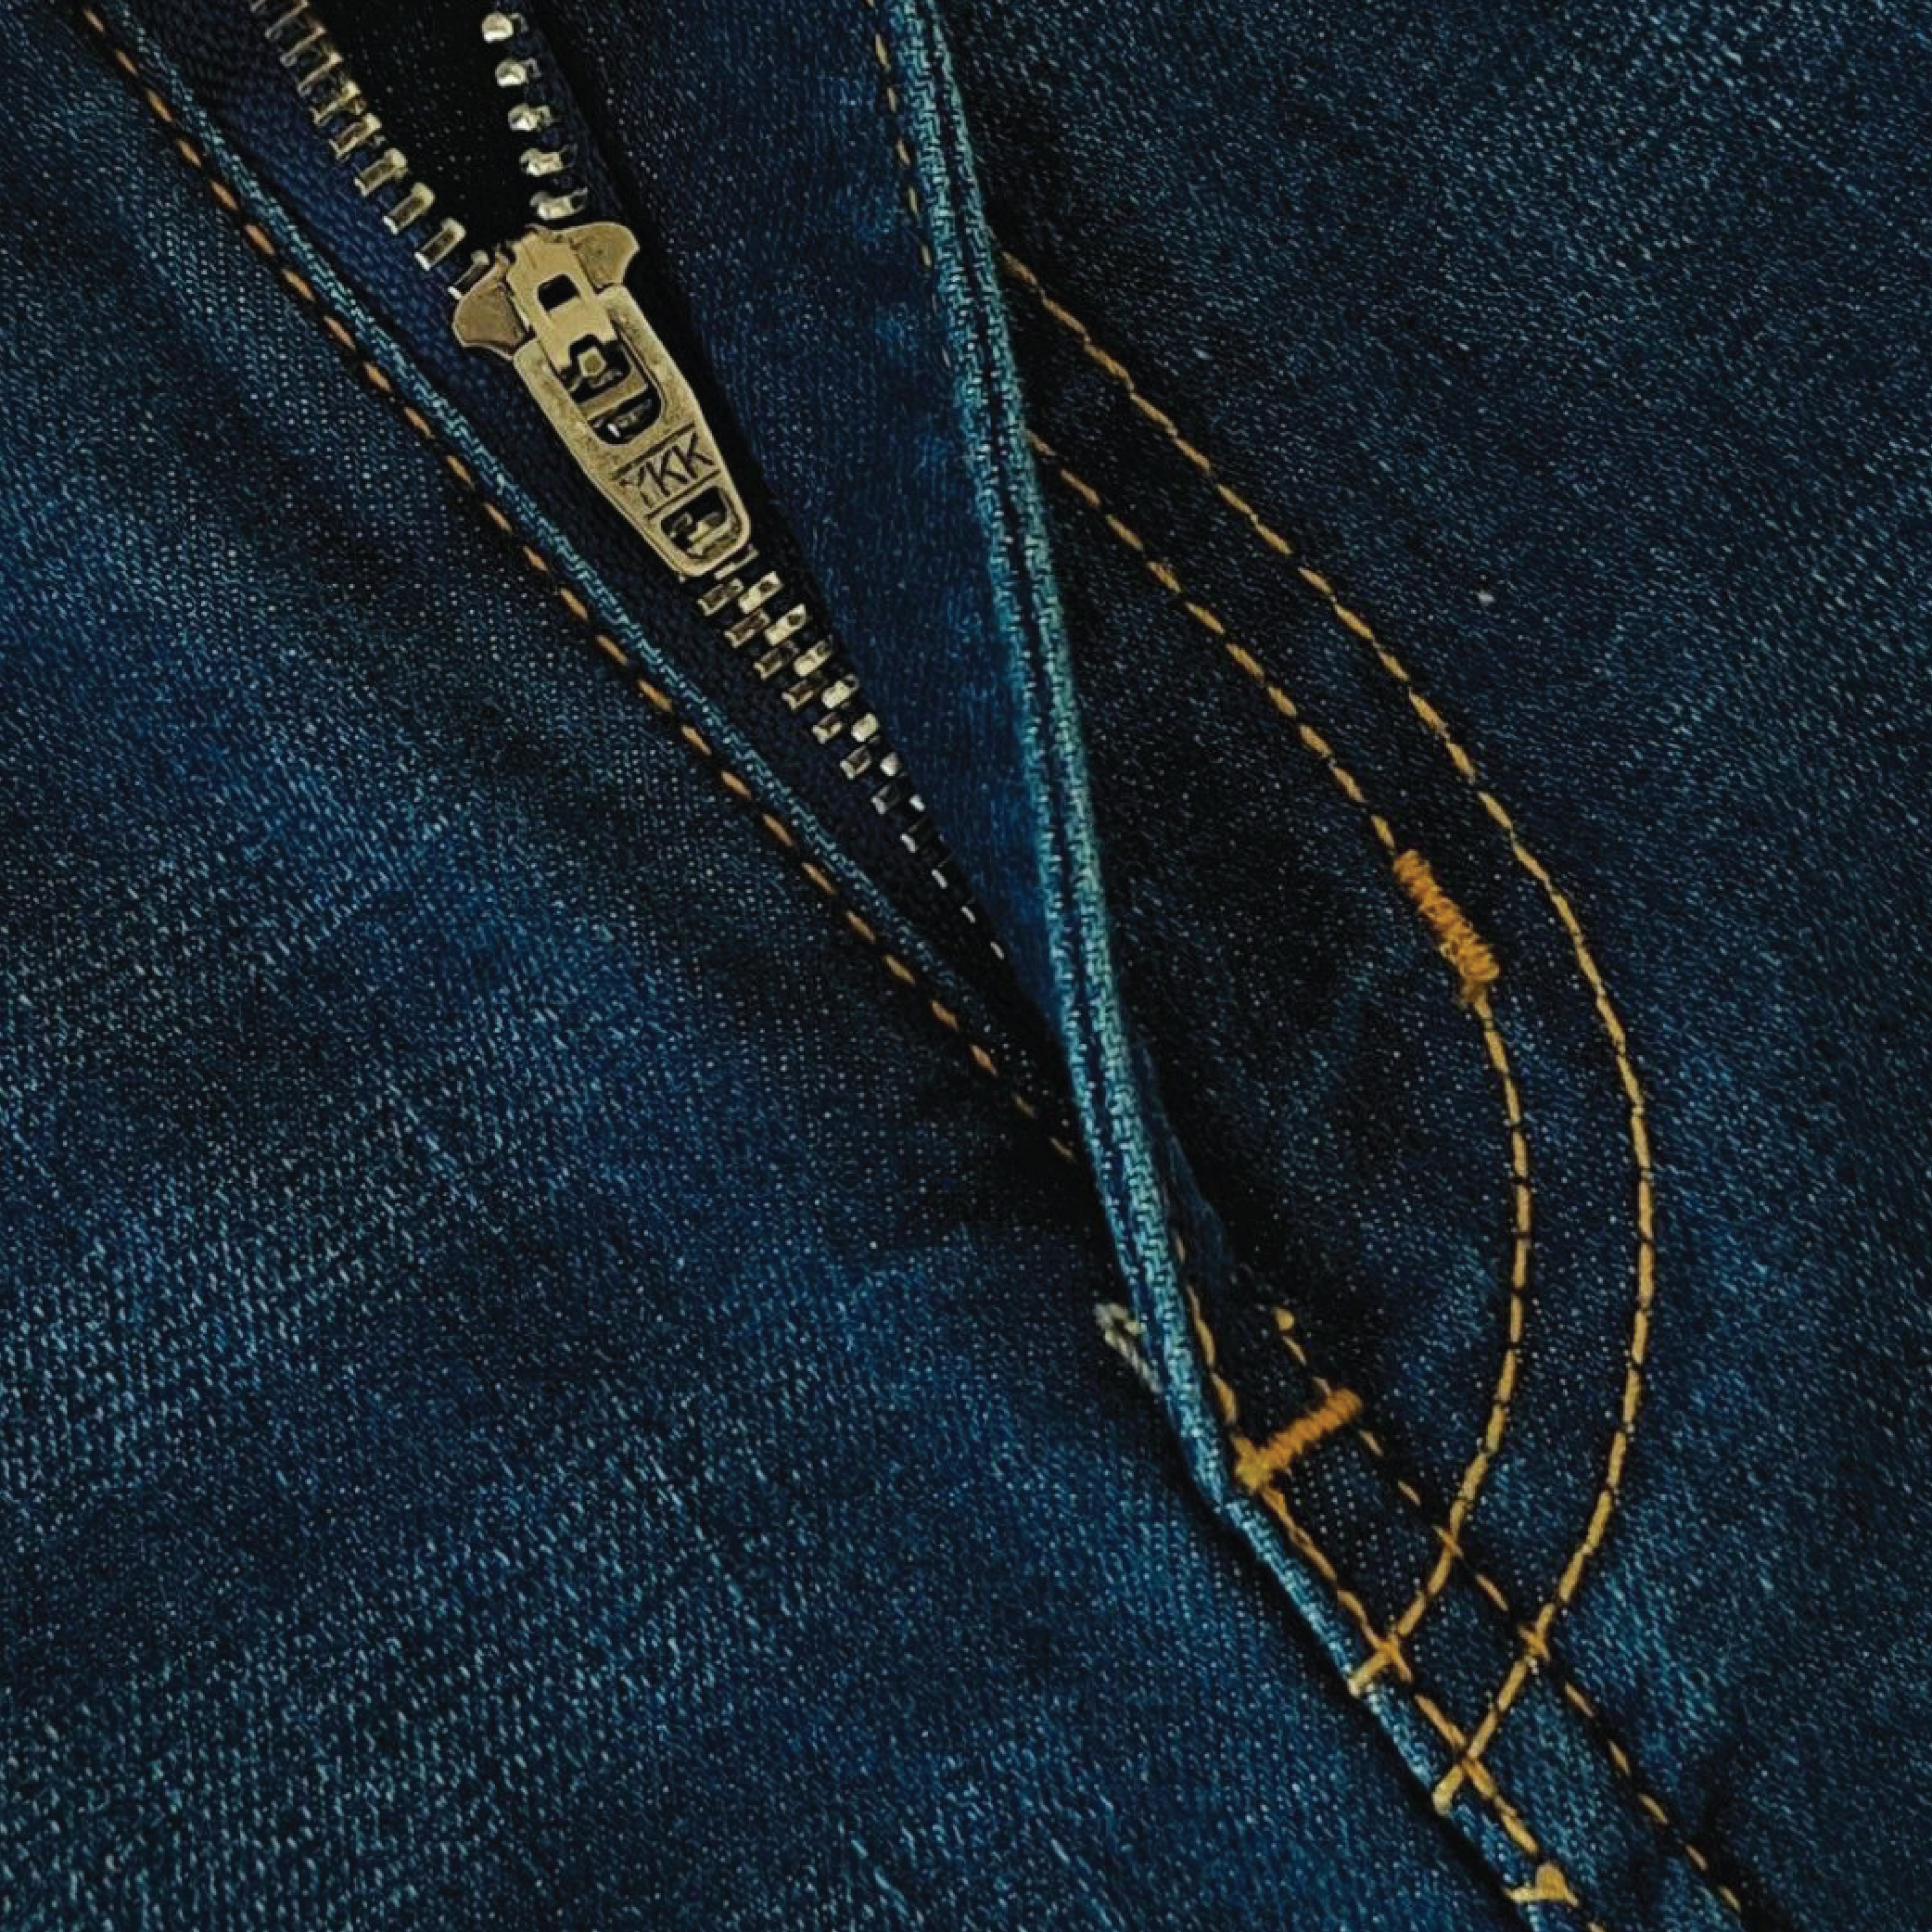 Emperio Armani Jeans 2-08